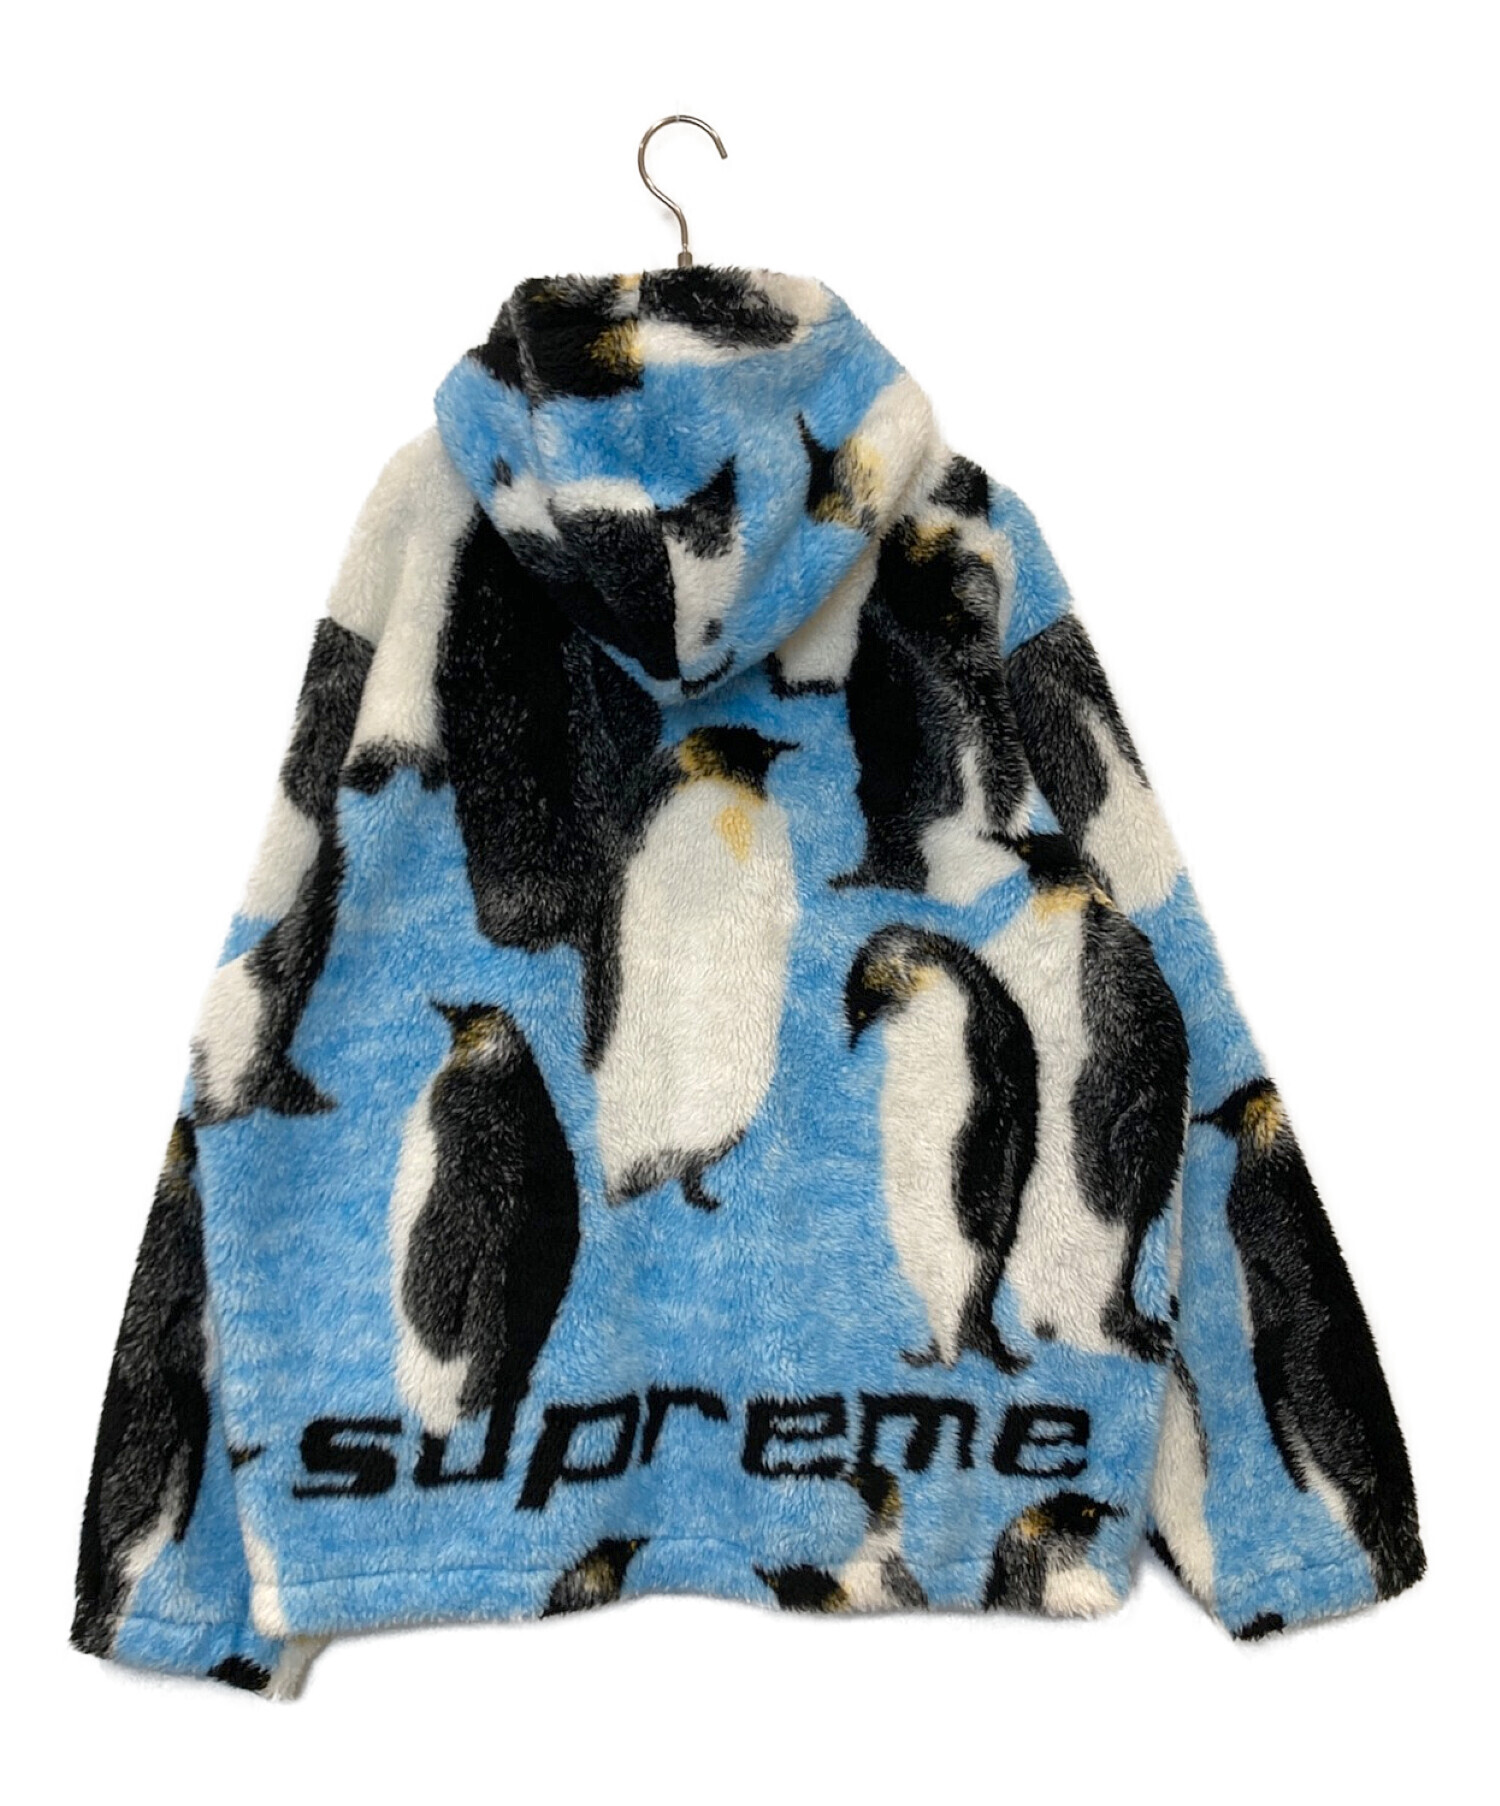 6,600円supreme penguins hooded jaket シュプリーム  XL